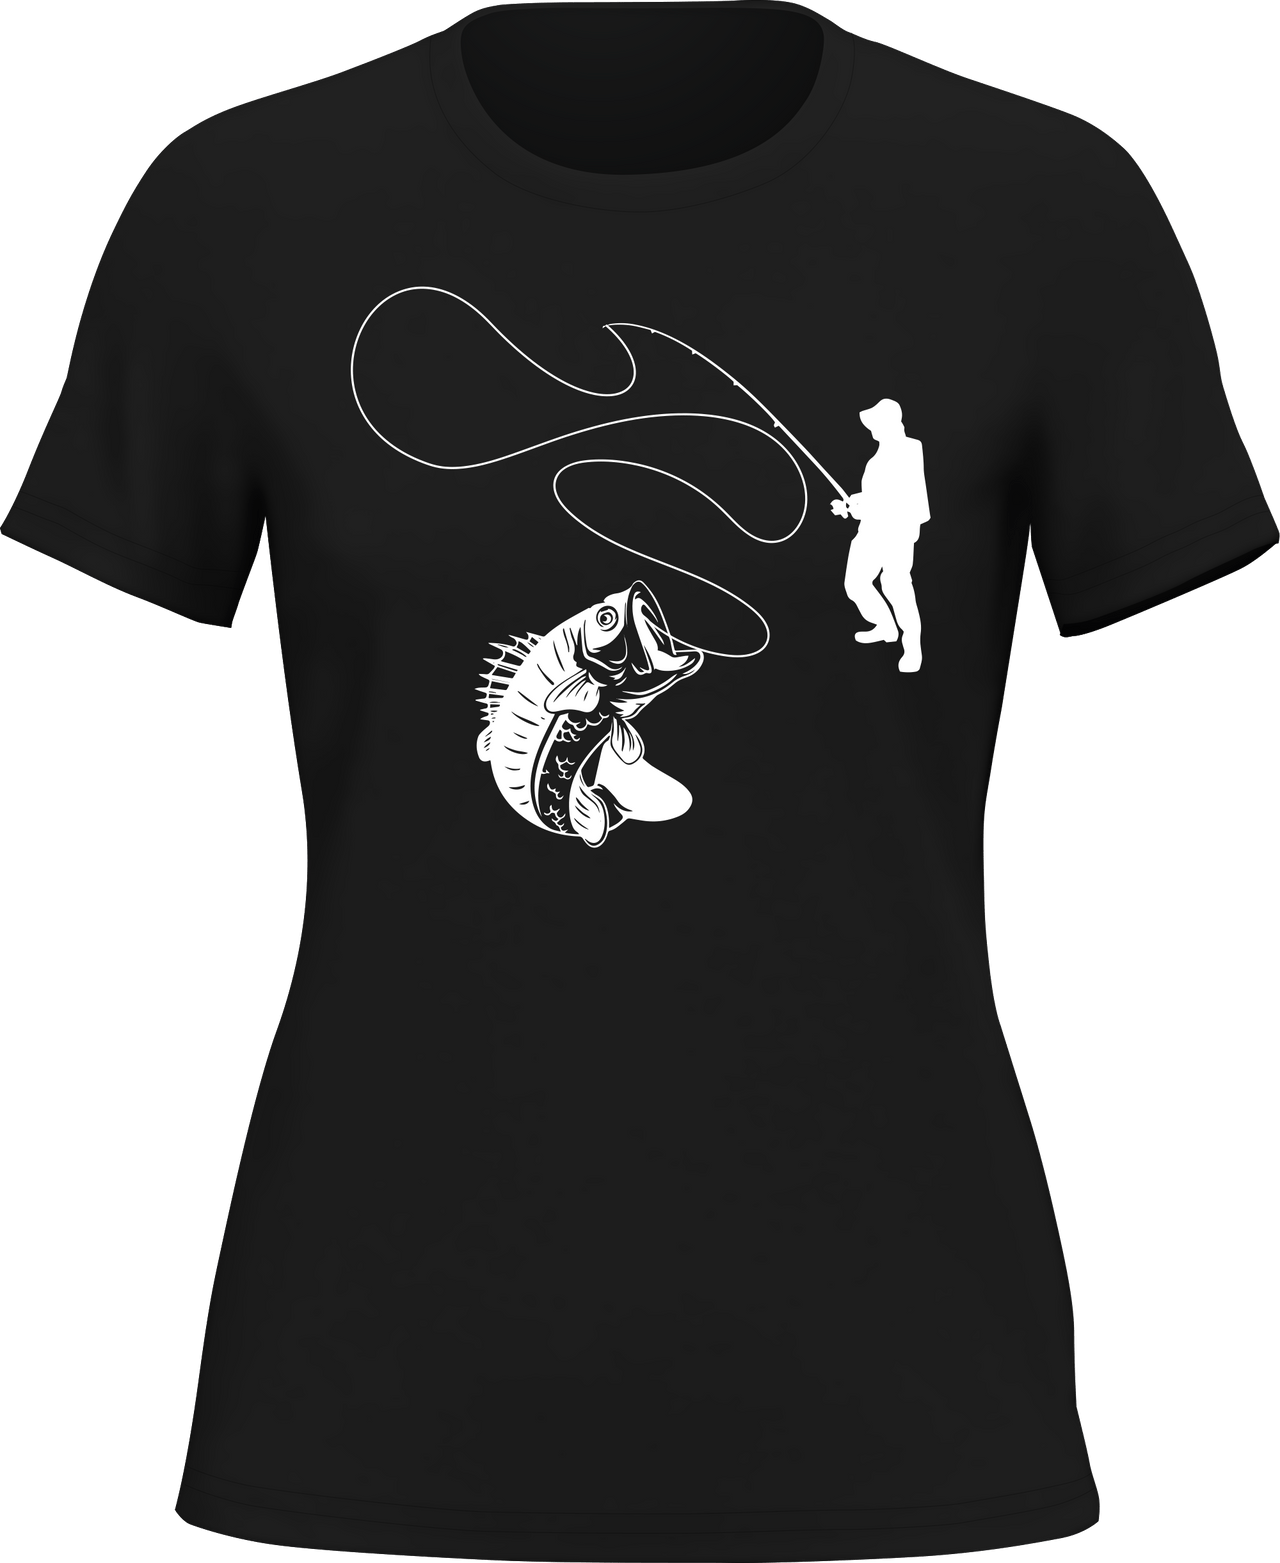 Fishing Lines T-Shirt for Women